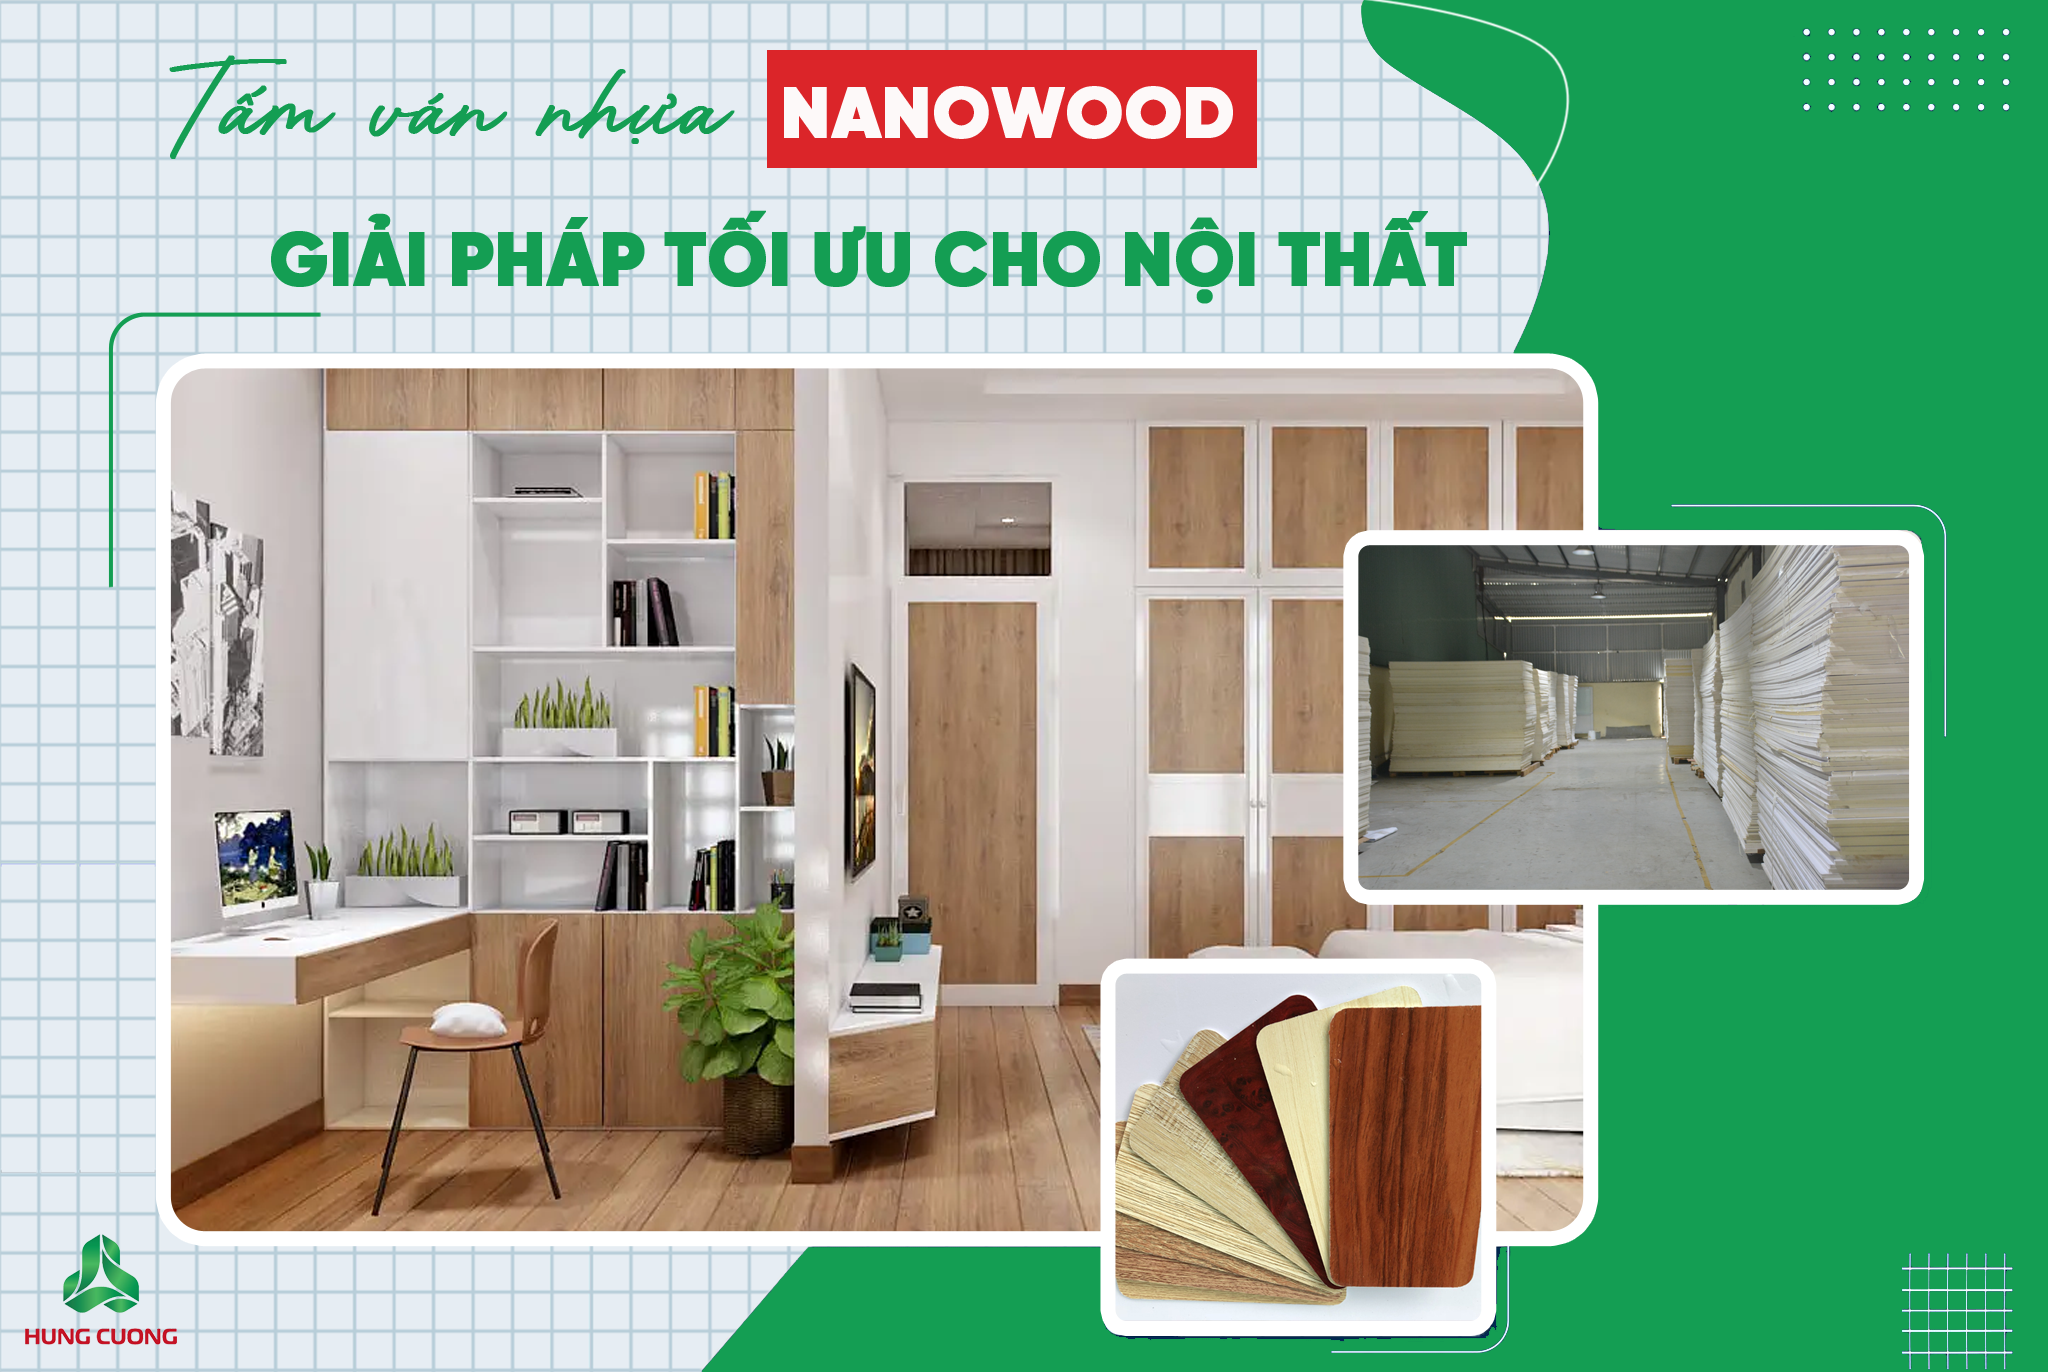 Tấm ván nhựa PVC Nanowood - Giải Pháp Tối Ưu dành cho nội thất